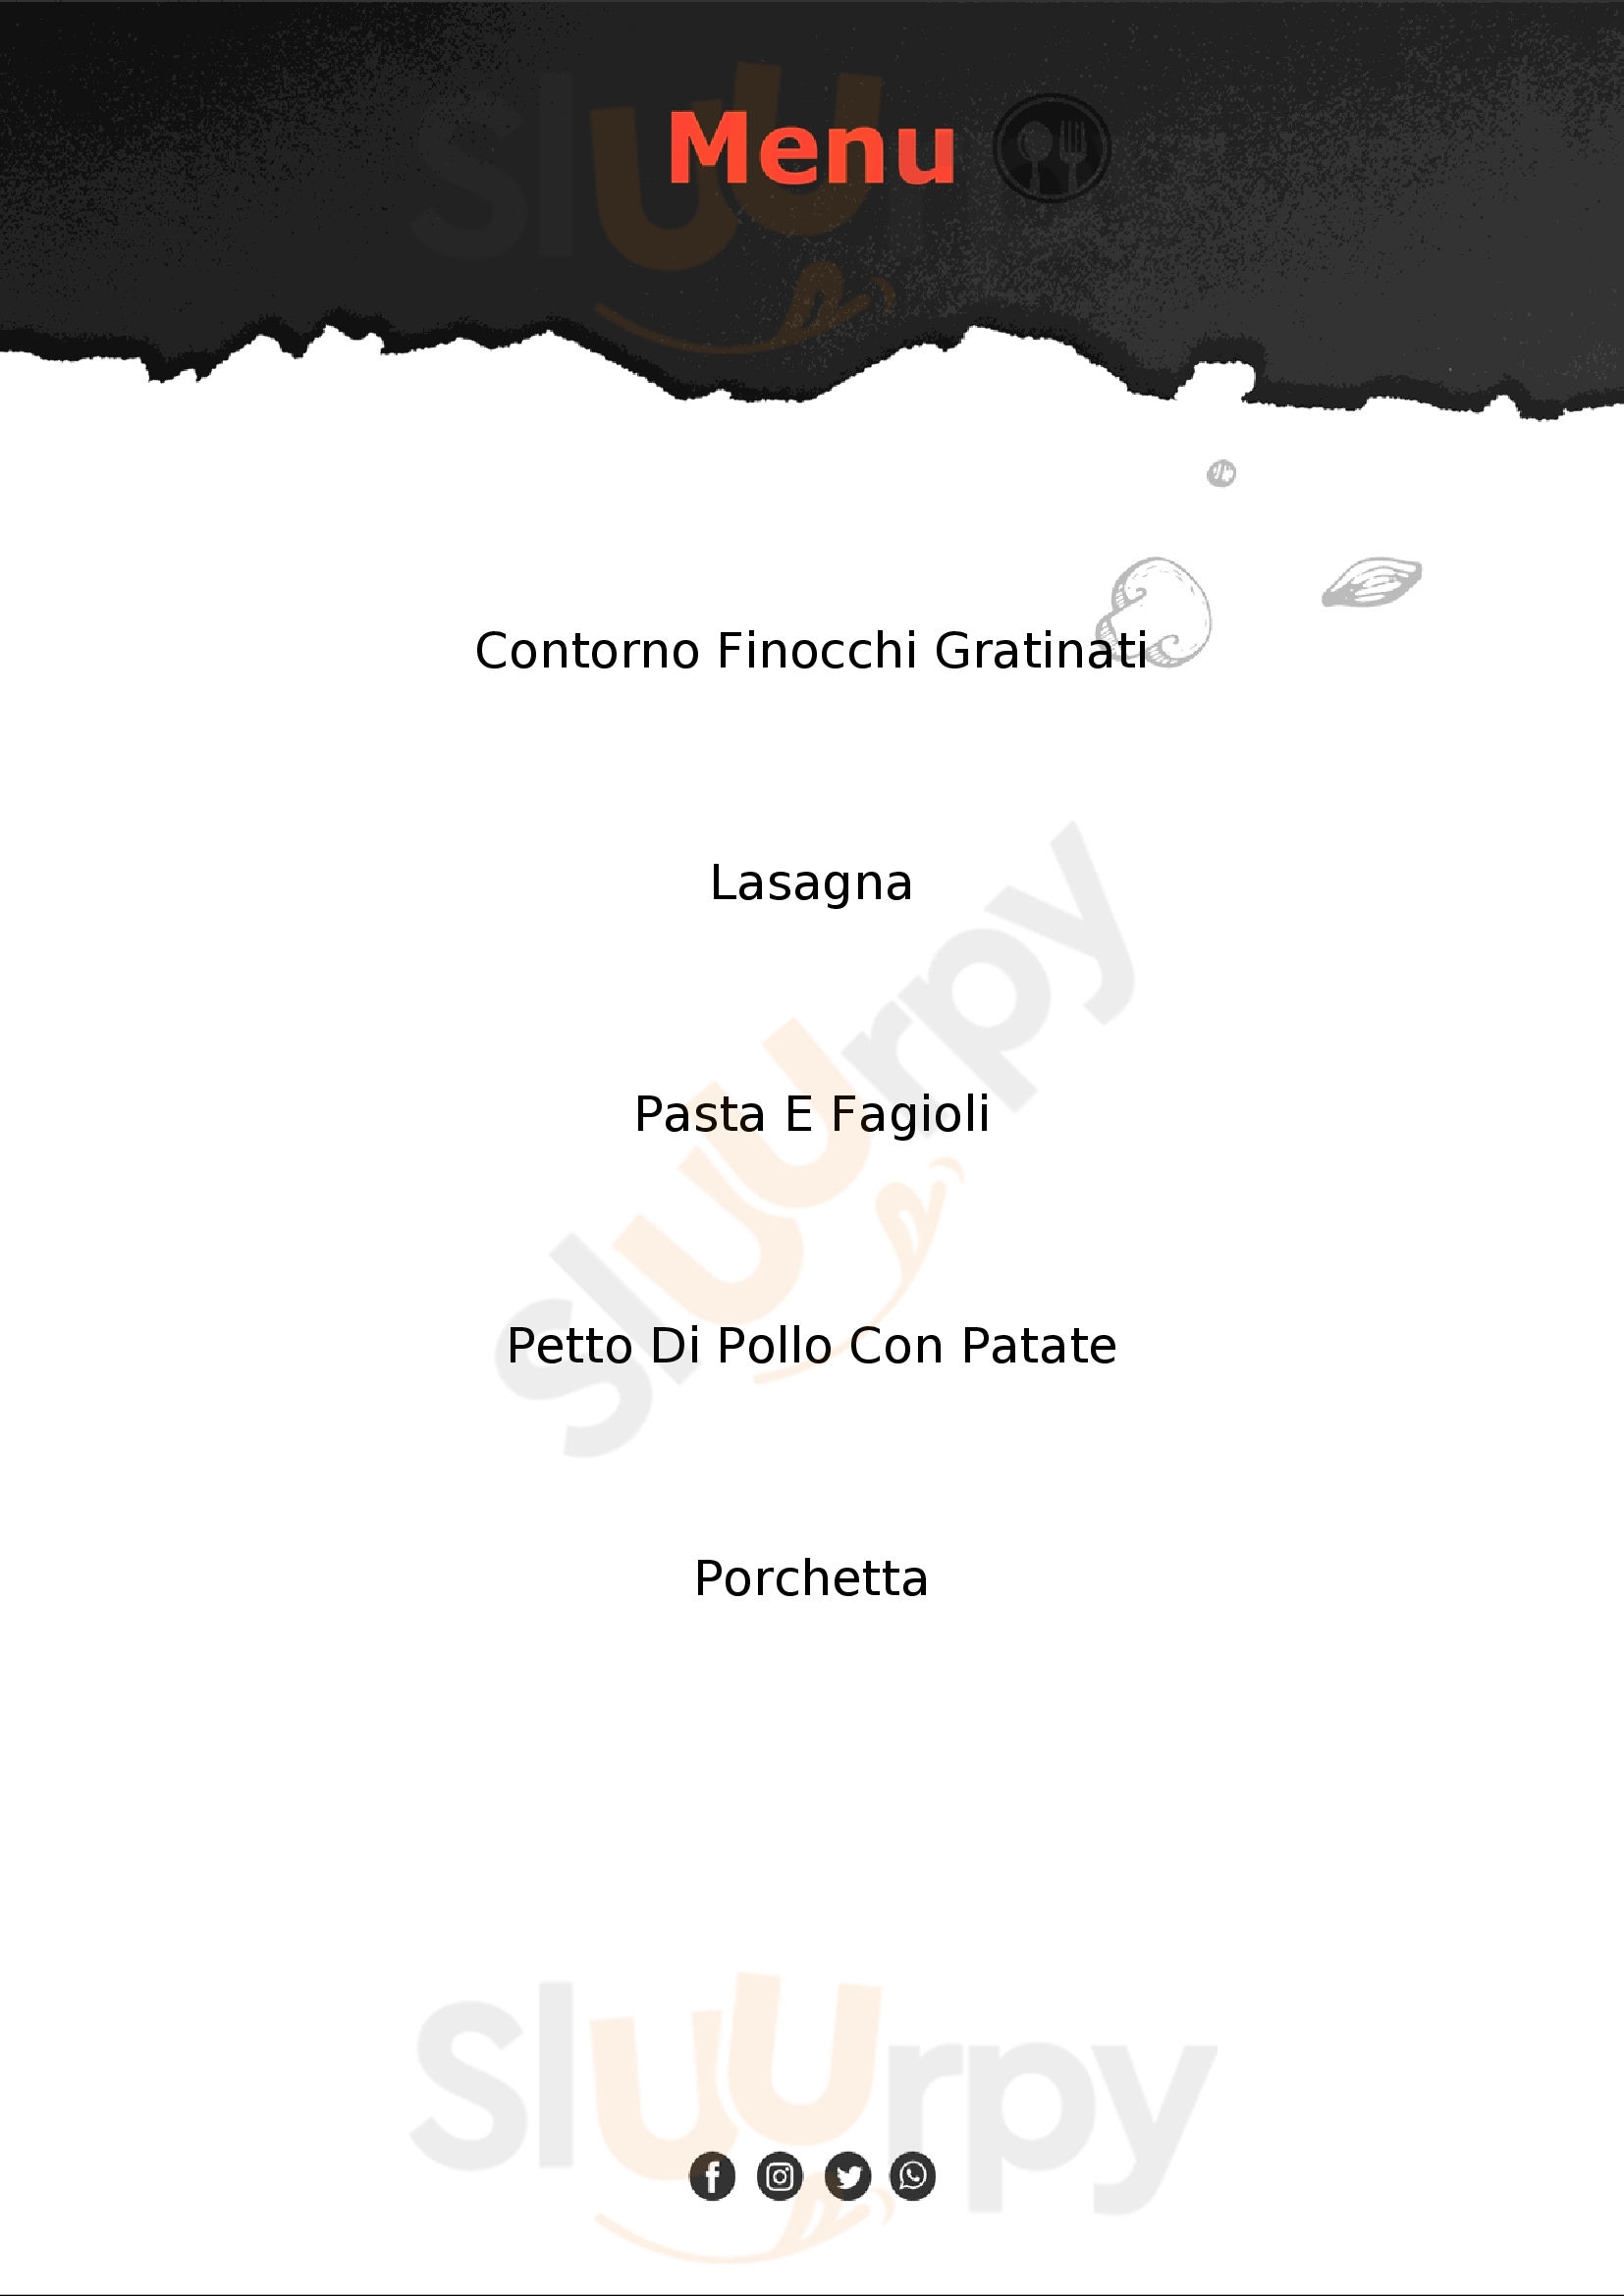 Stop and go bar trattoria Casale Monferrato menù 1 pagina